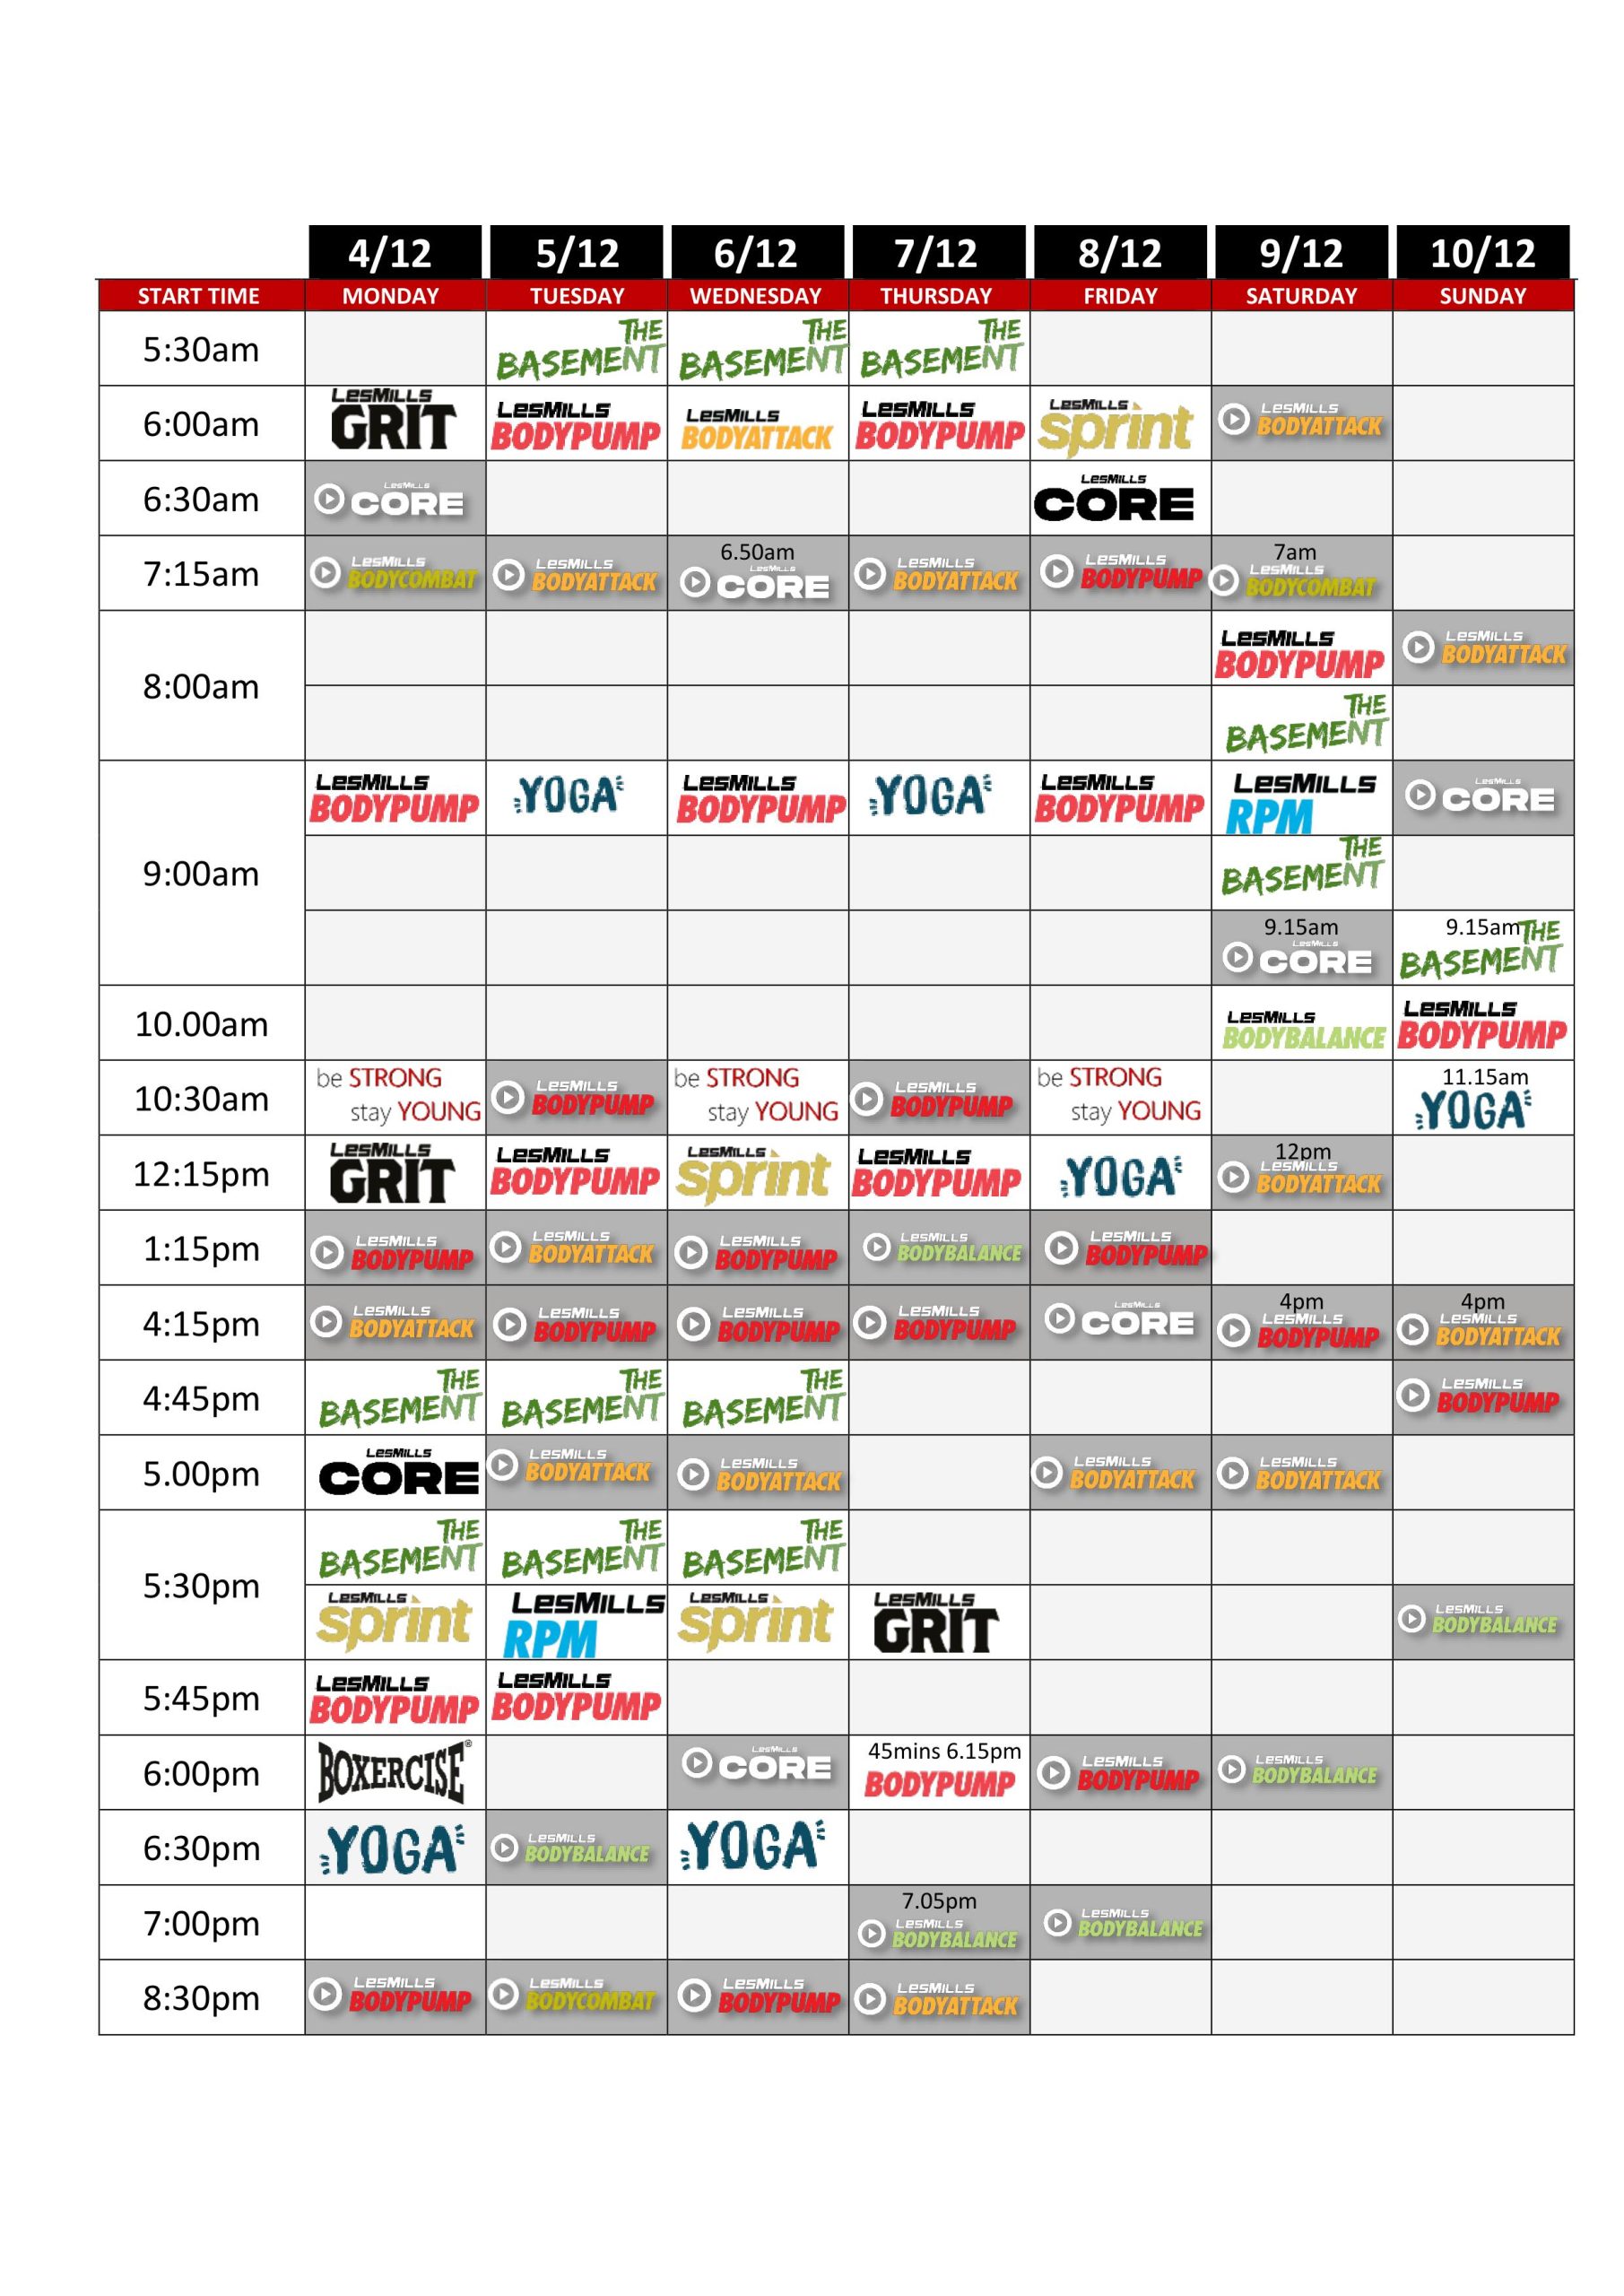 Christmas Timetable